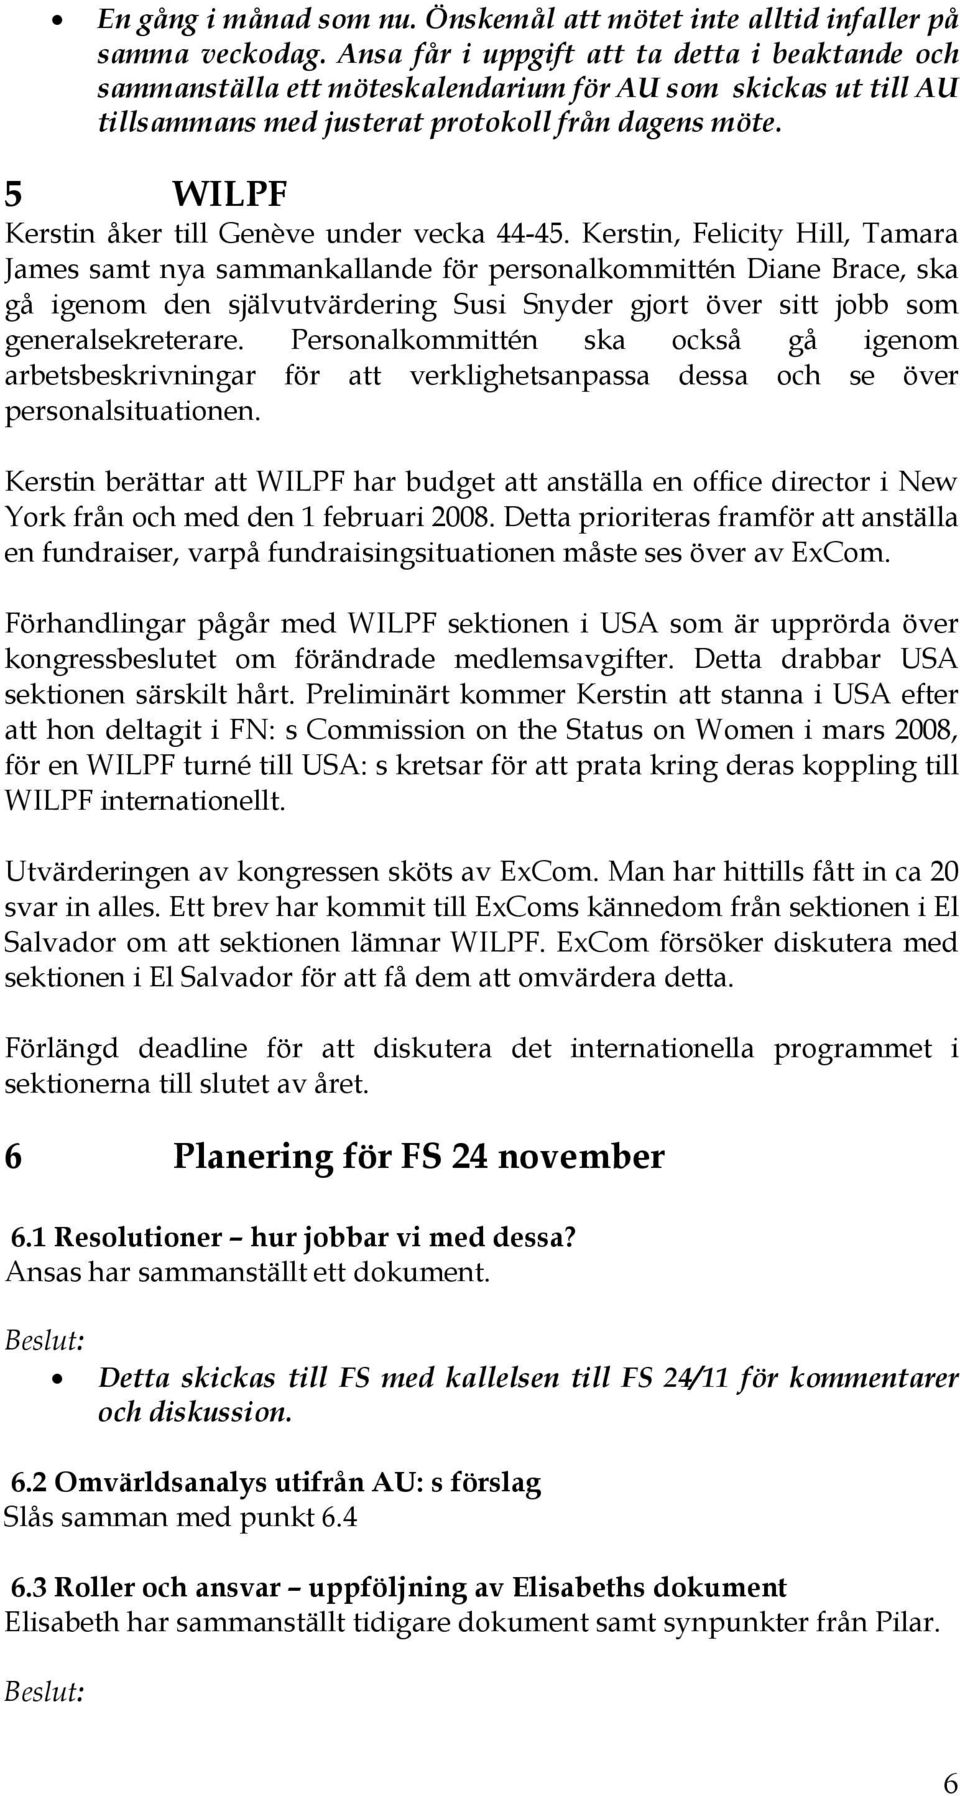 5 WILPF Kerstin åker till Genève under vecka 44-45.